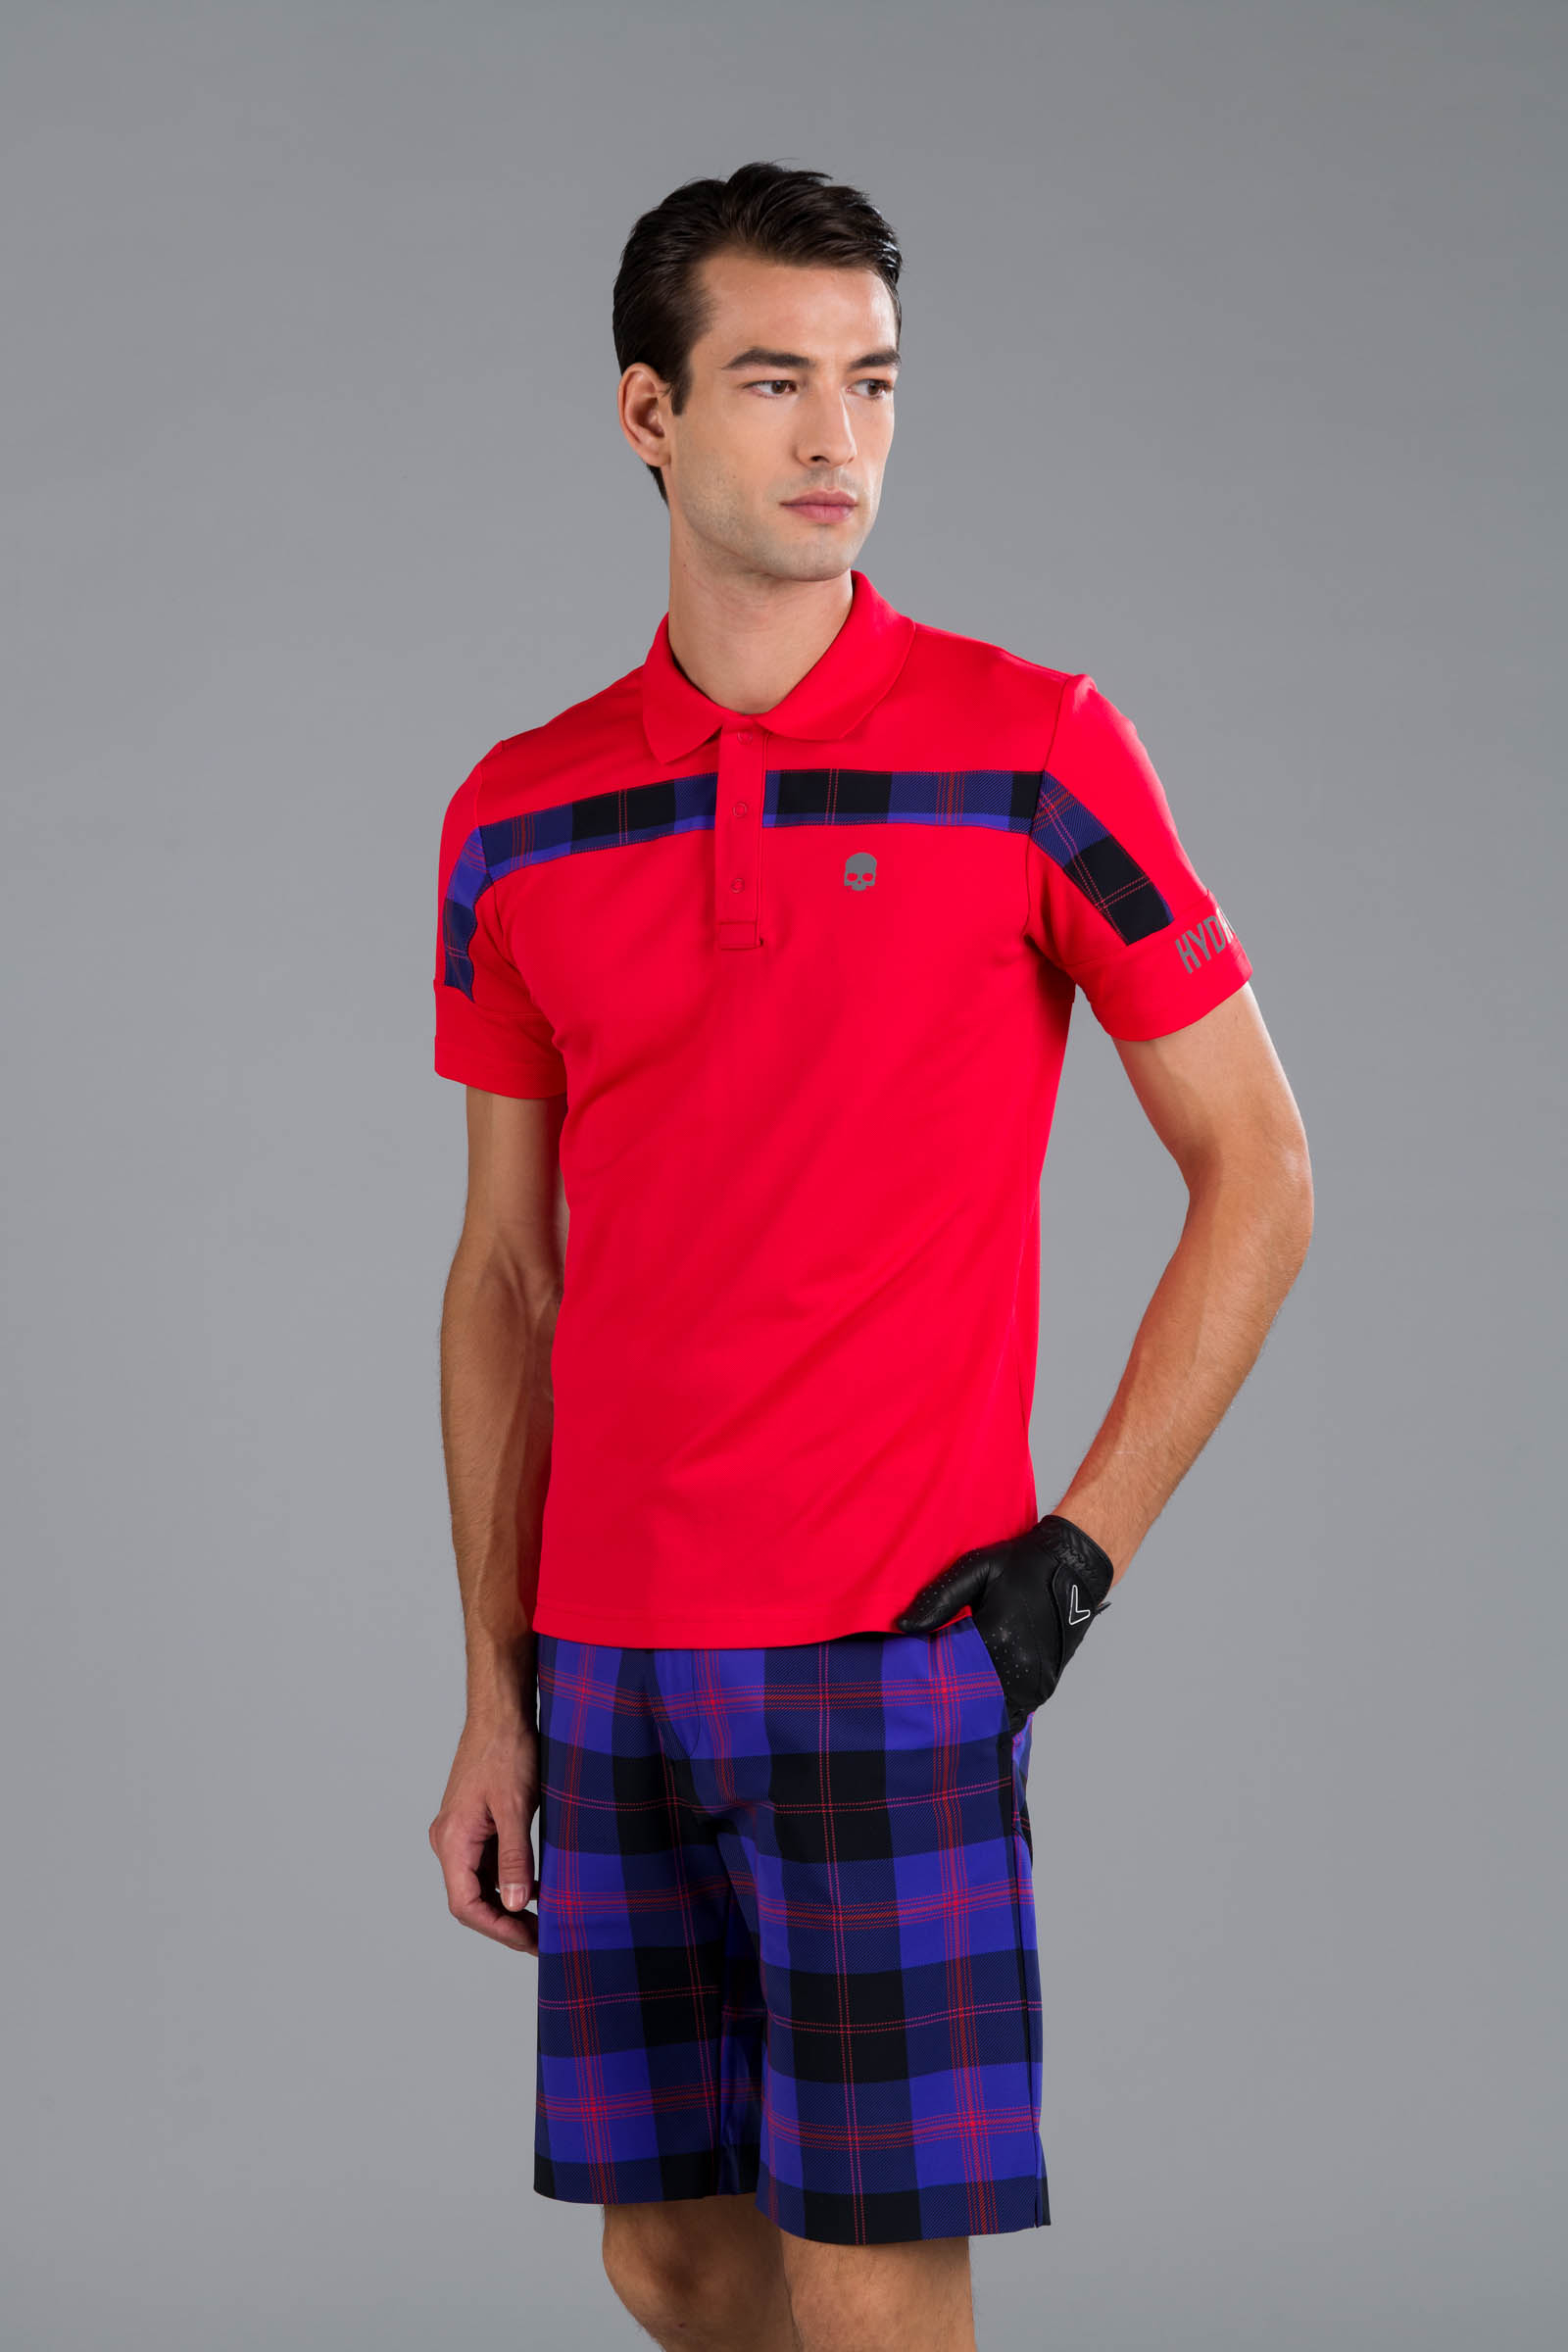 TECH POLO - RED - Abbigliamento sportivo | Hydrogen